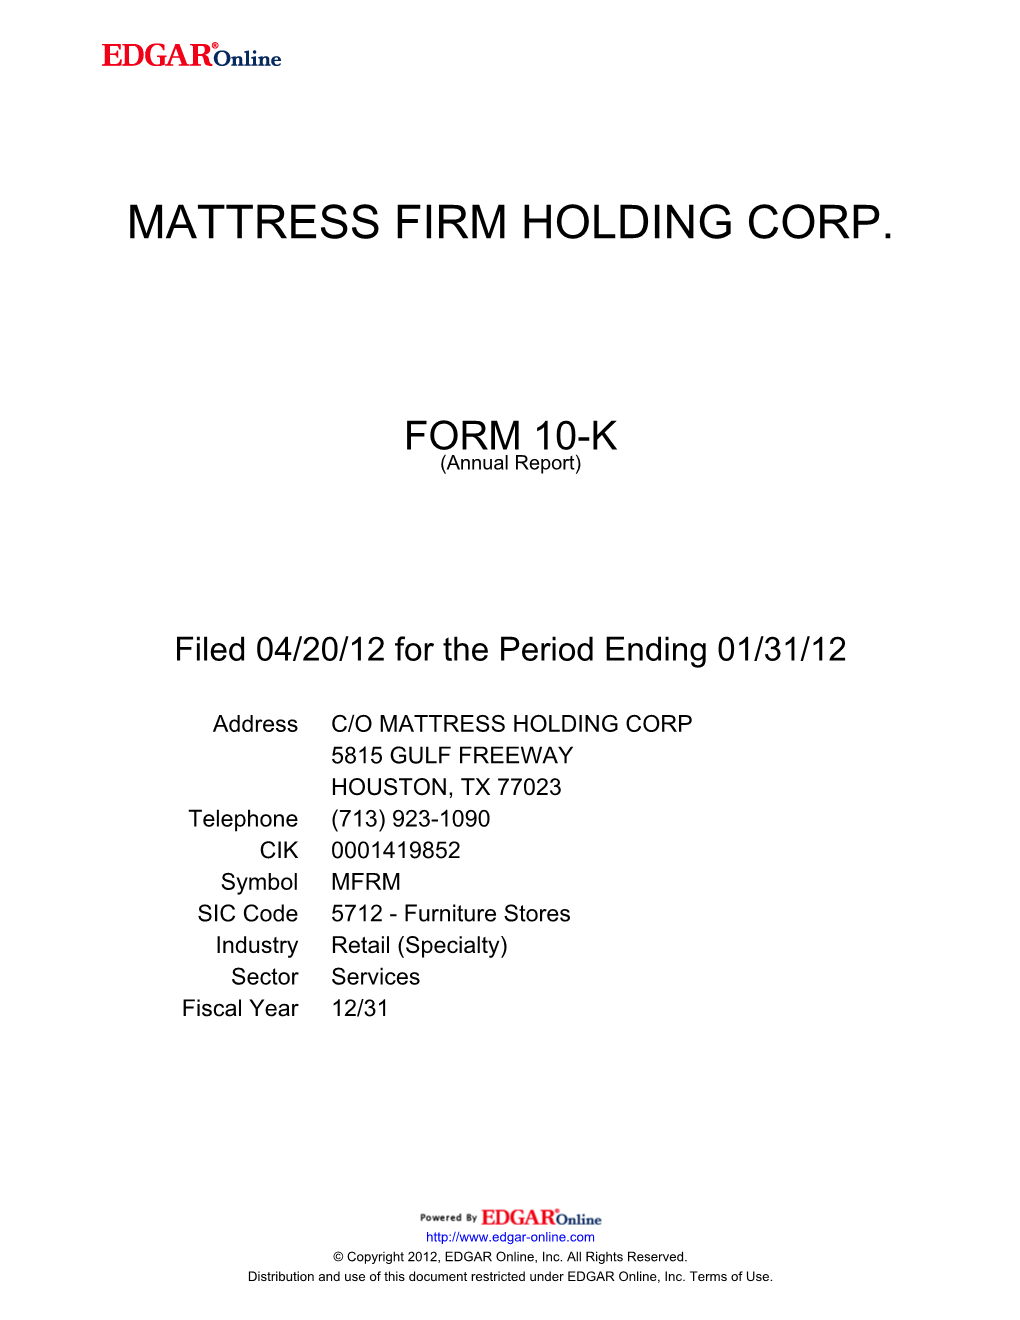 Mattress Firm Holding Corp